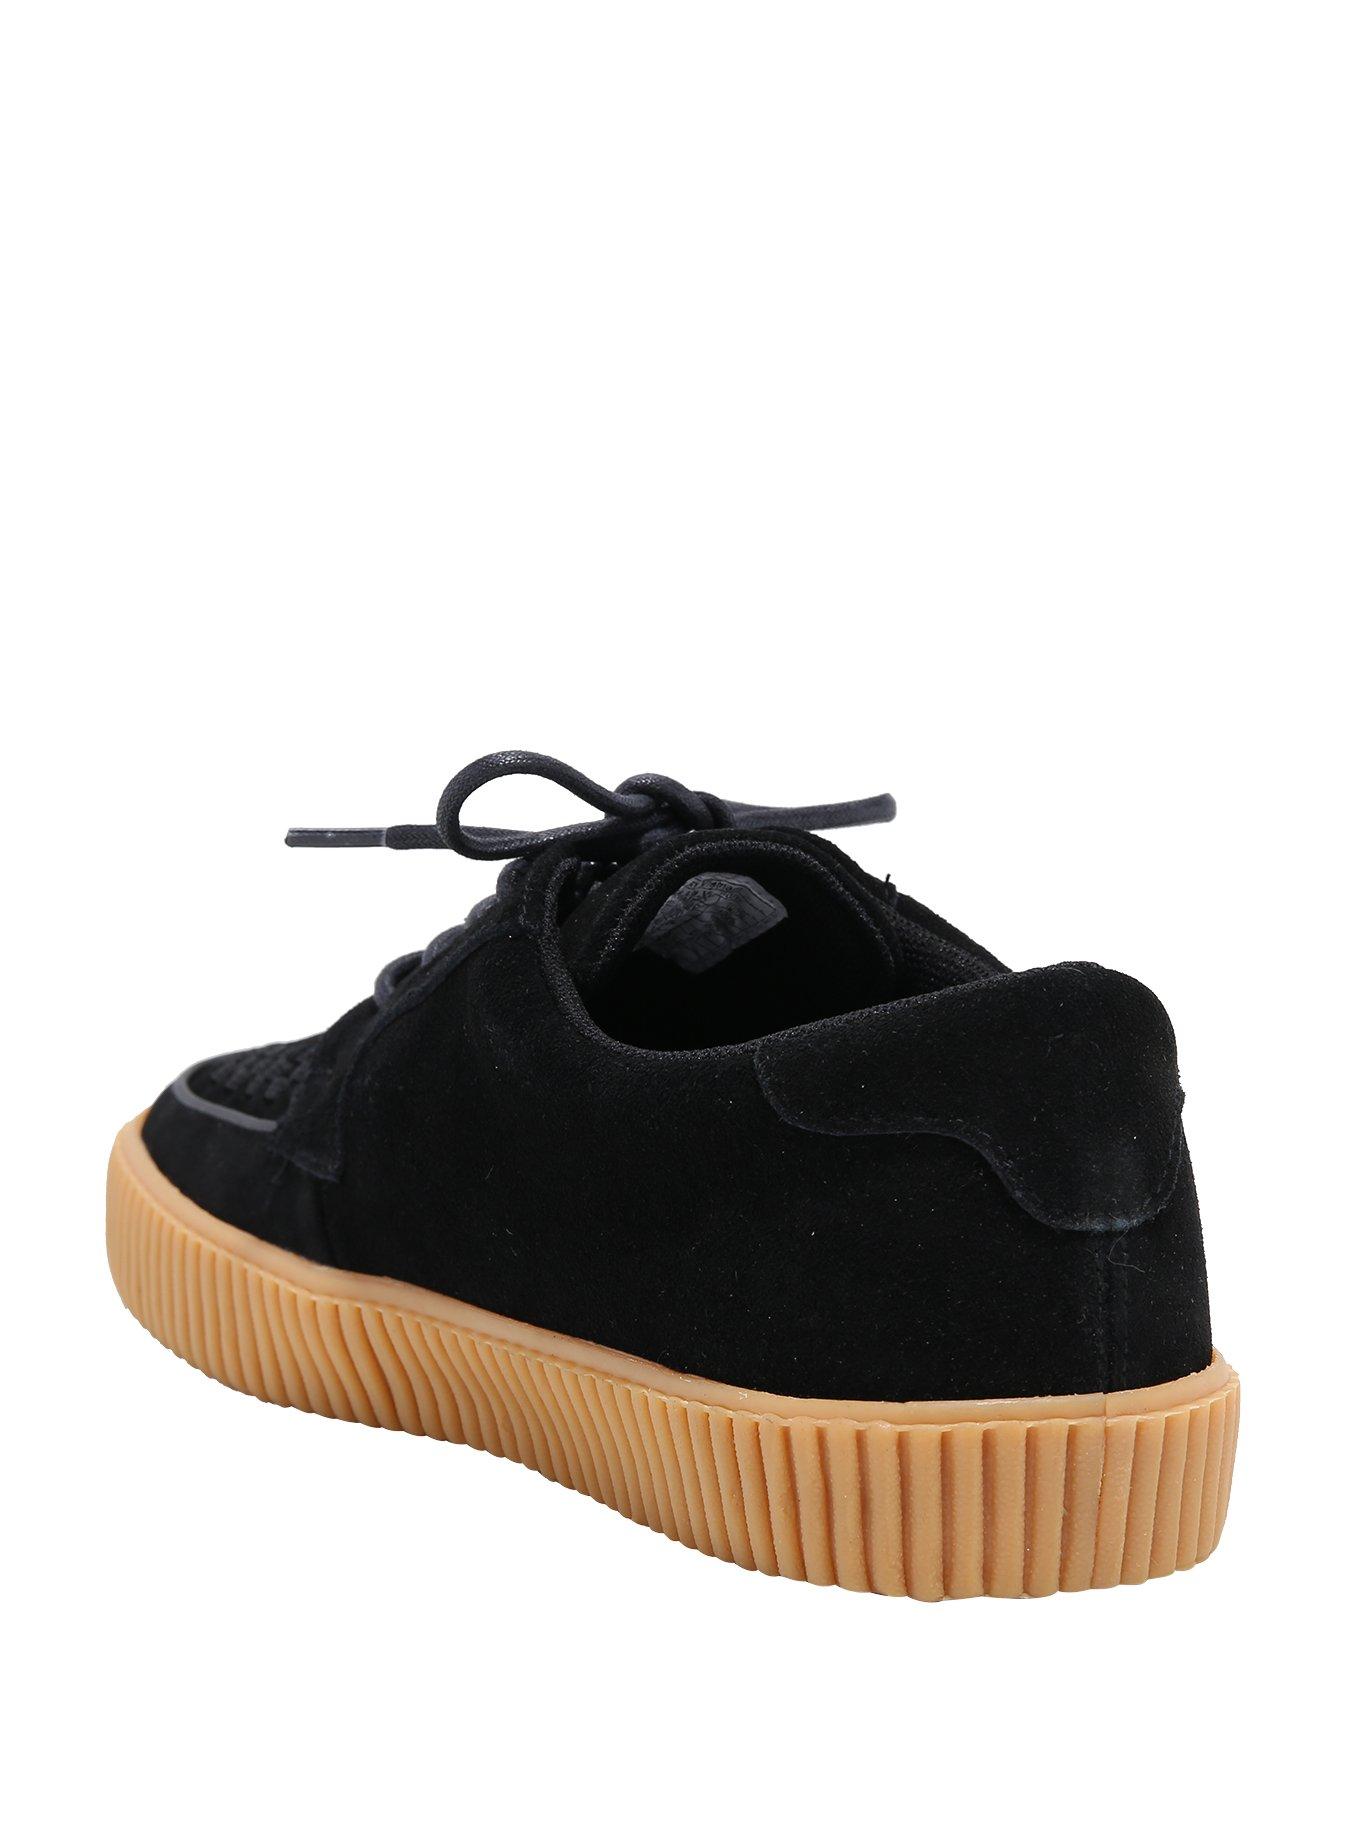 T.U.K. Black Suede Sneakers, , alternate